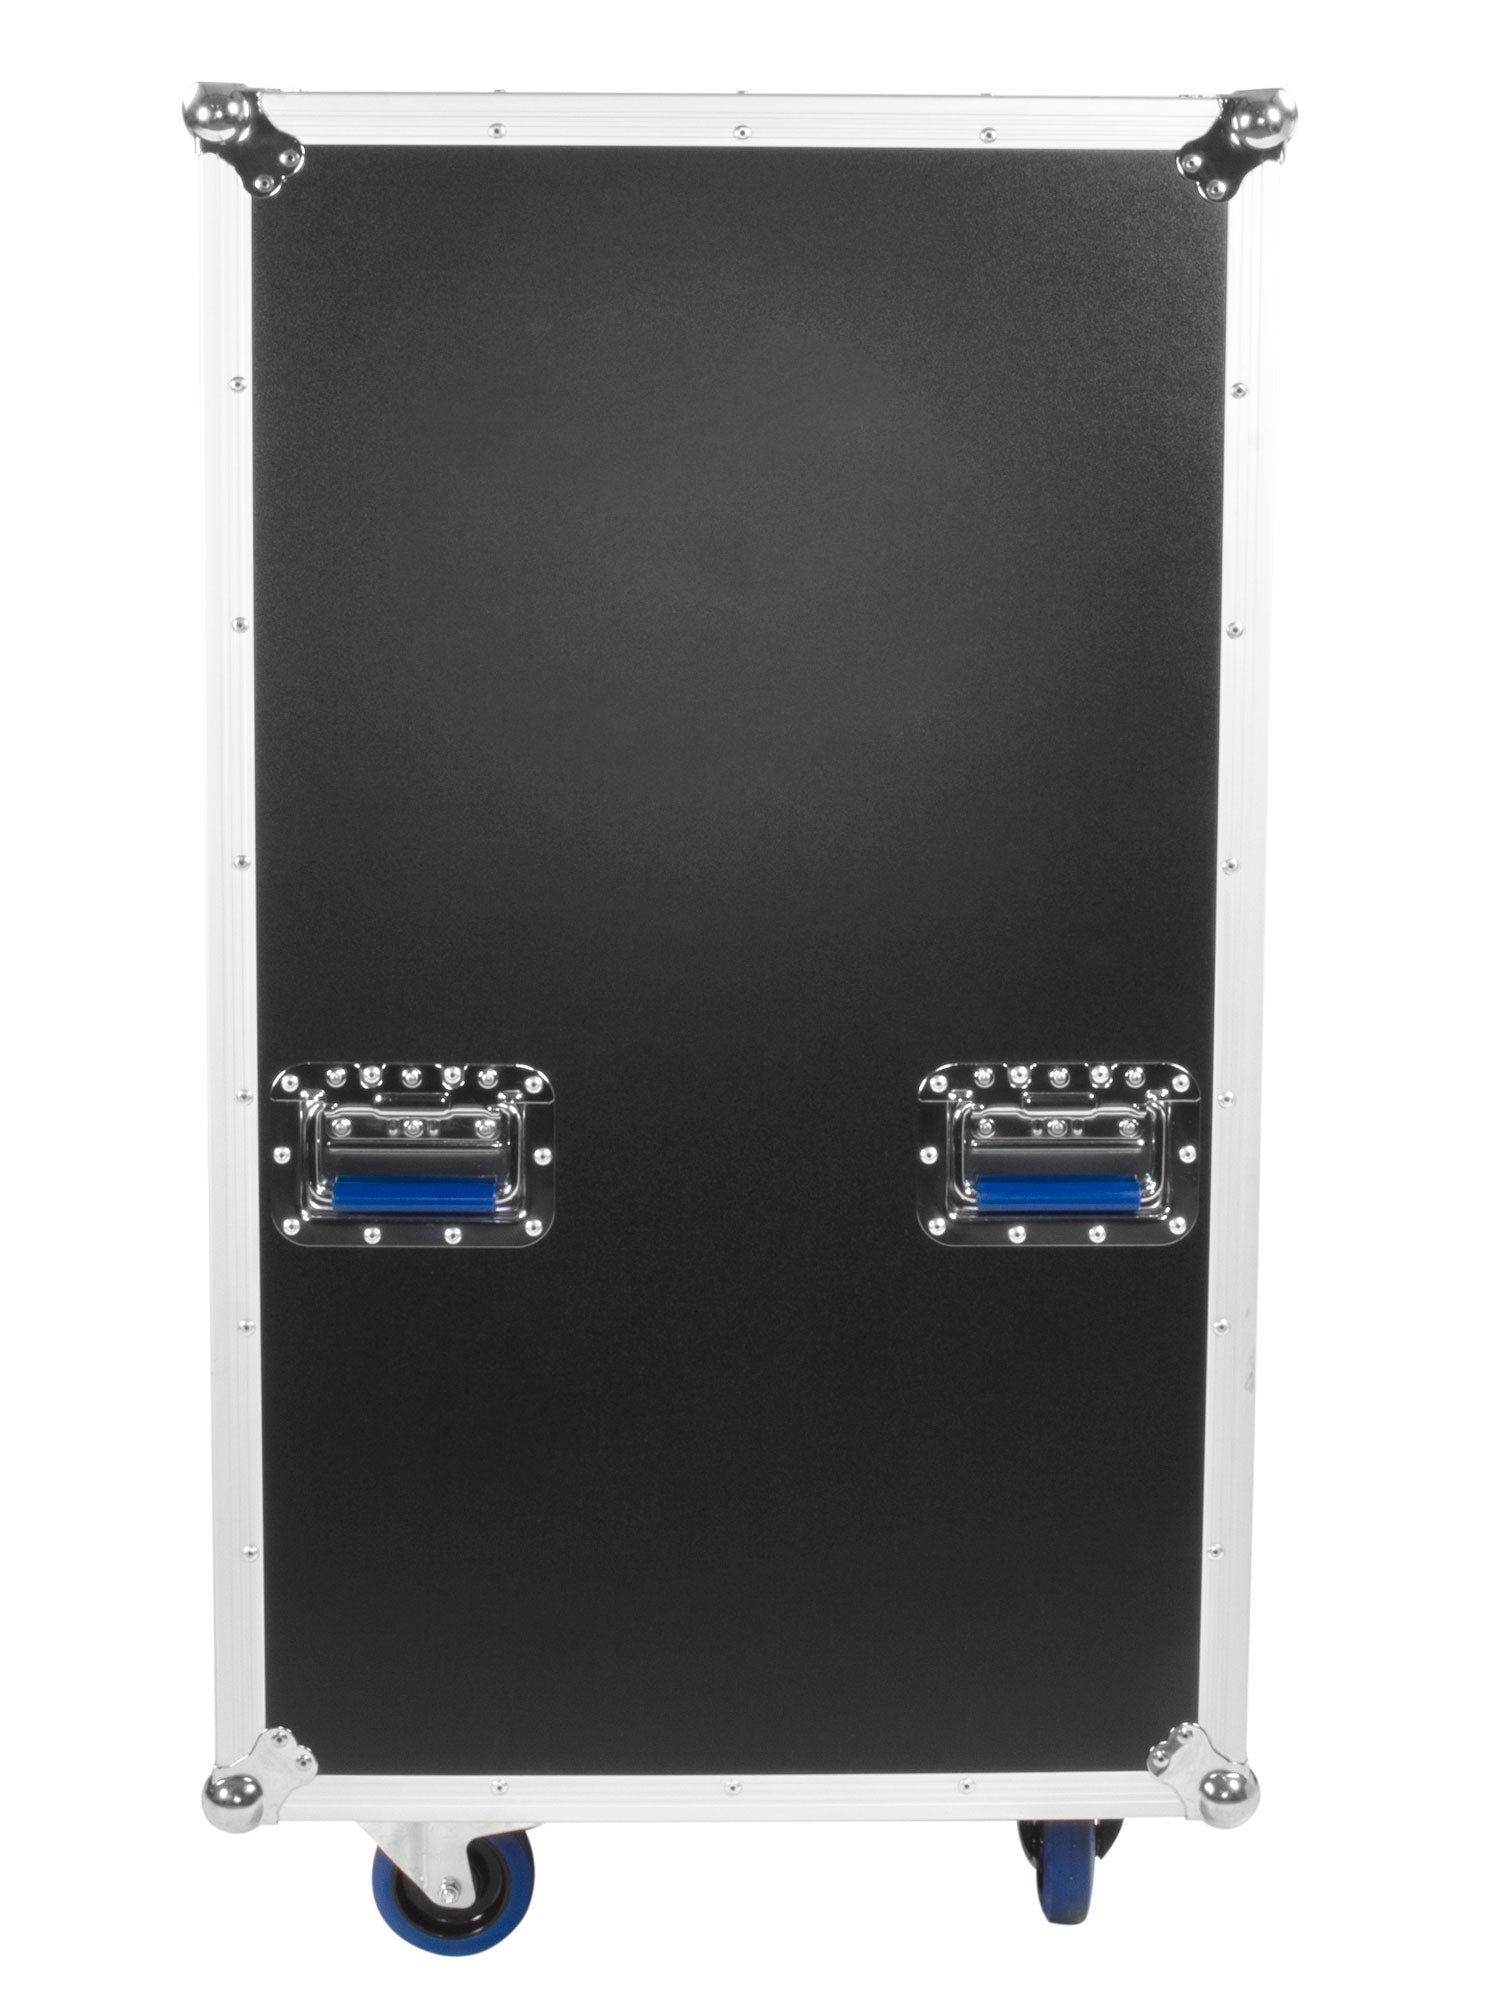 OSP SC20U-28 20 Space ATA Shock Amp Rack Case w/Casters